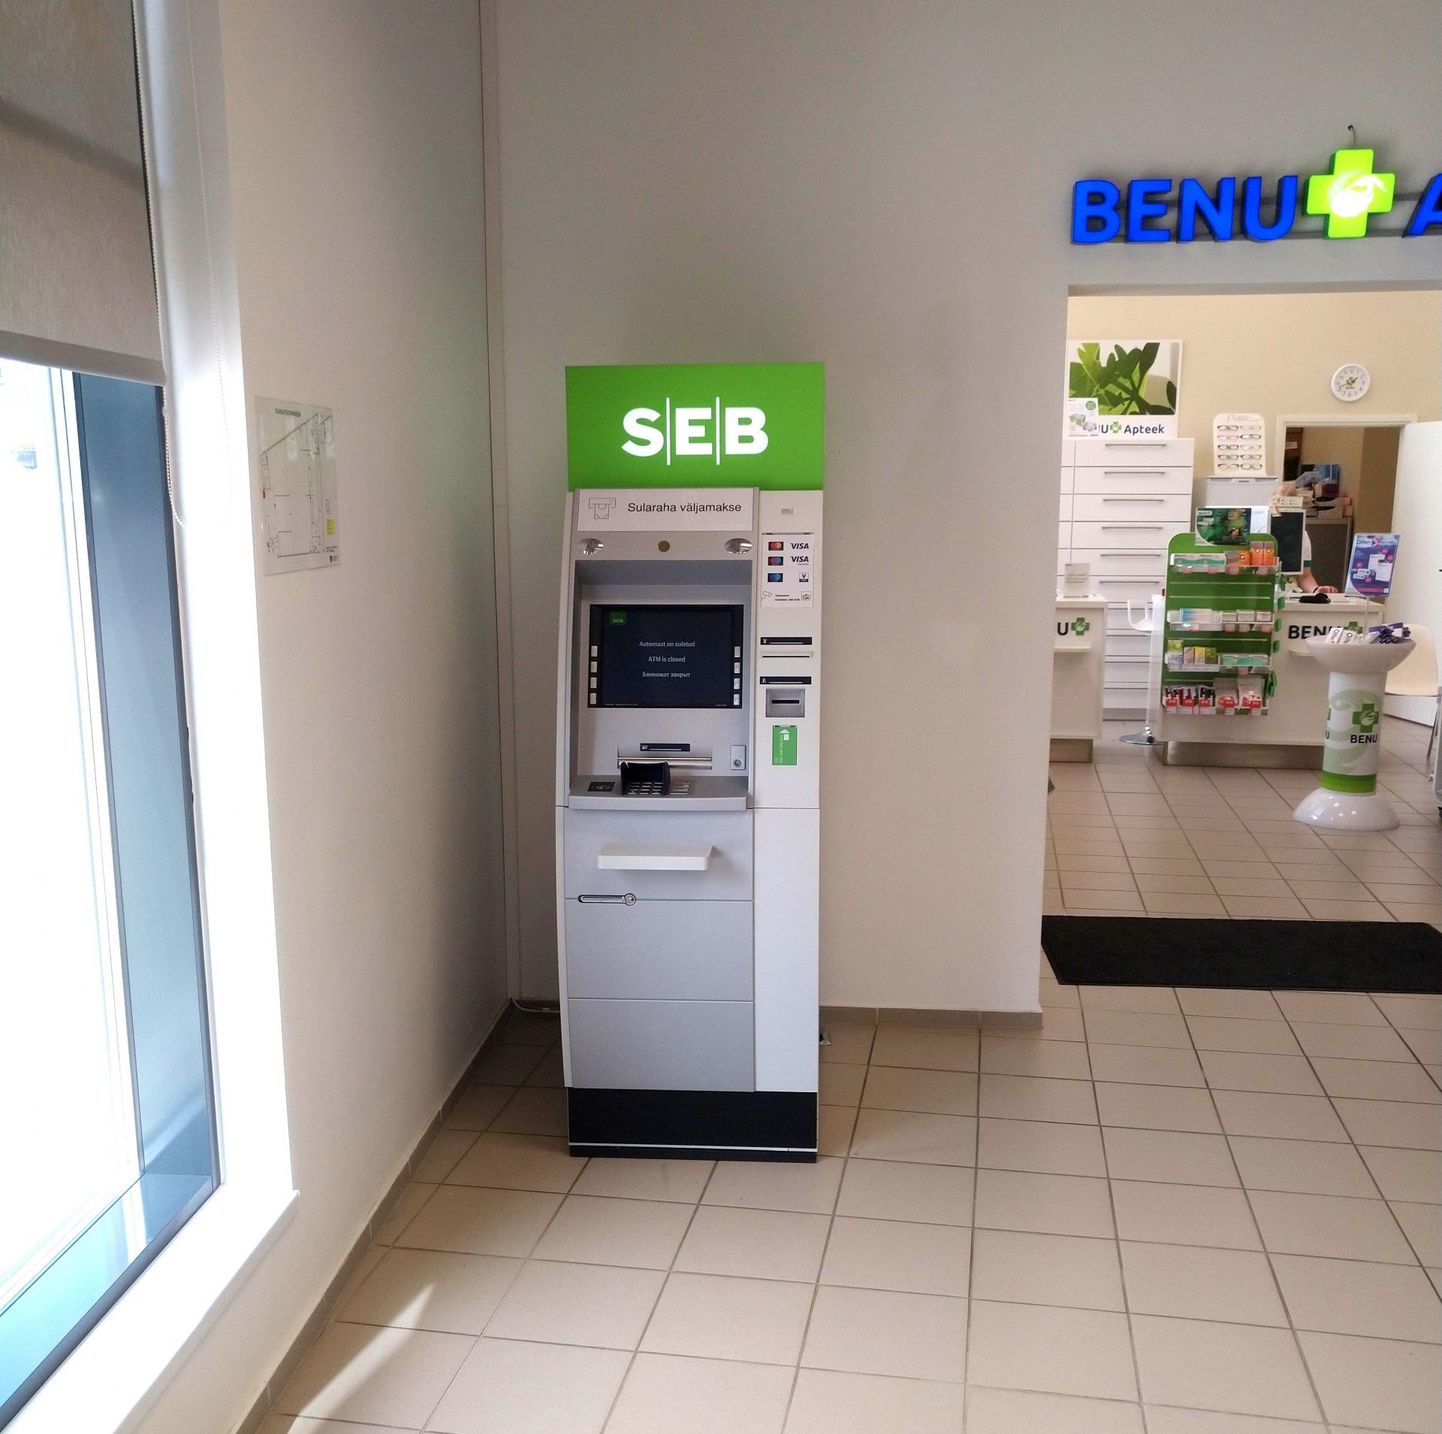 SEB panga sularahaautomaadi leiab Väike-Maarjas nüüd Konsumi kauplusest.